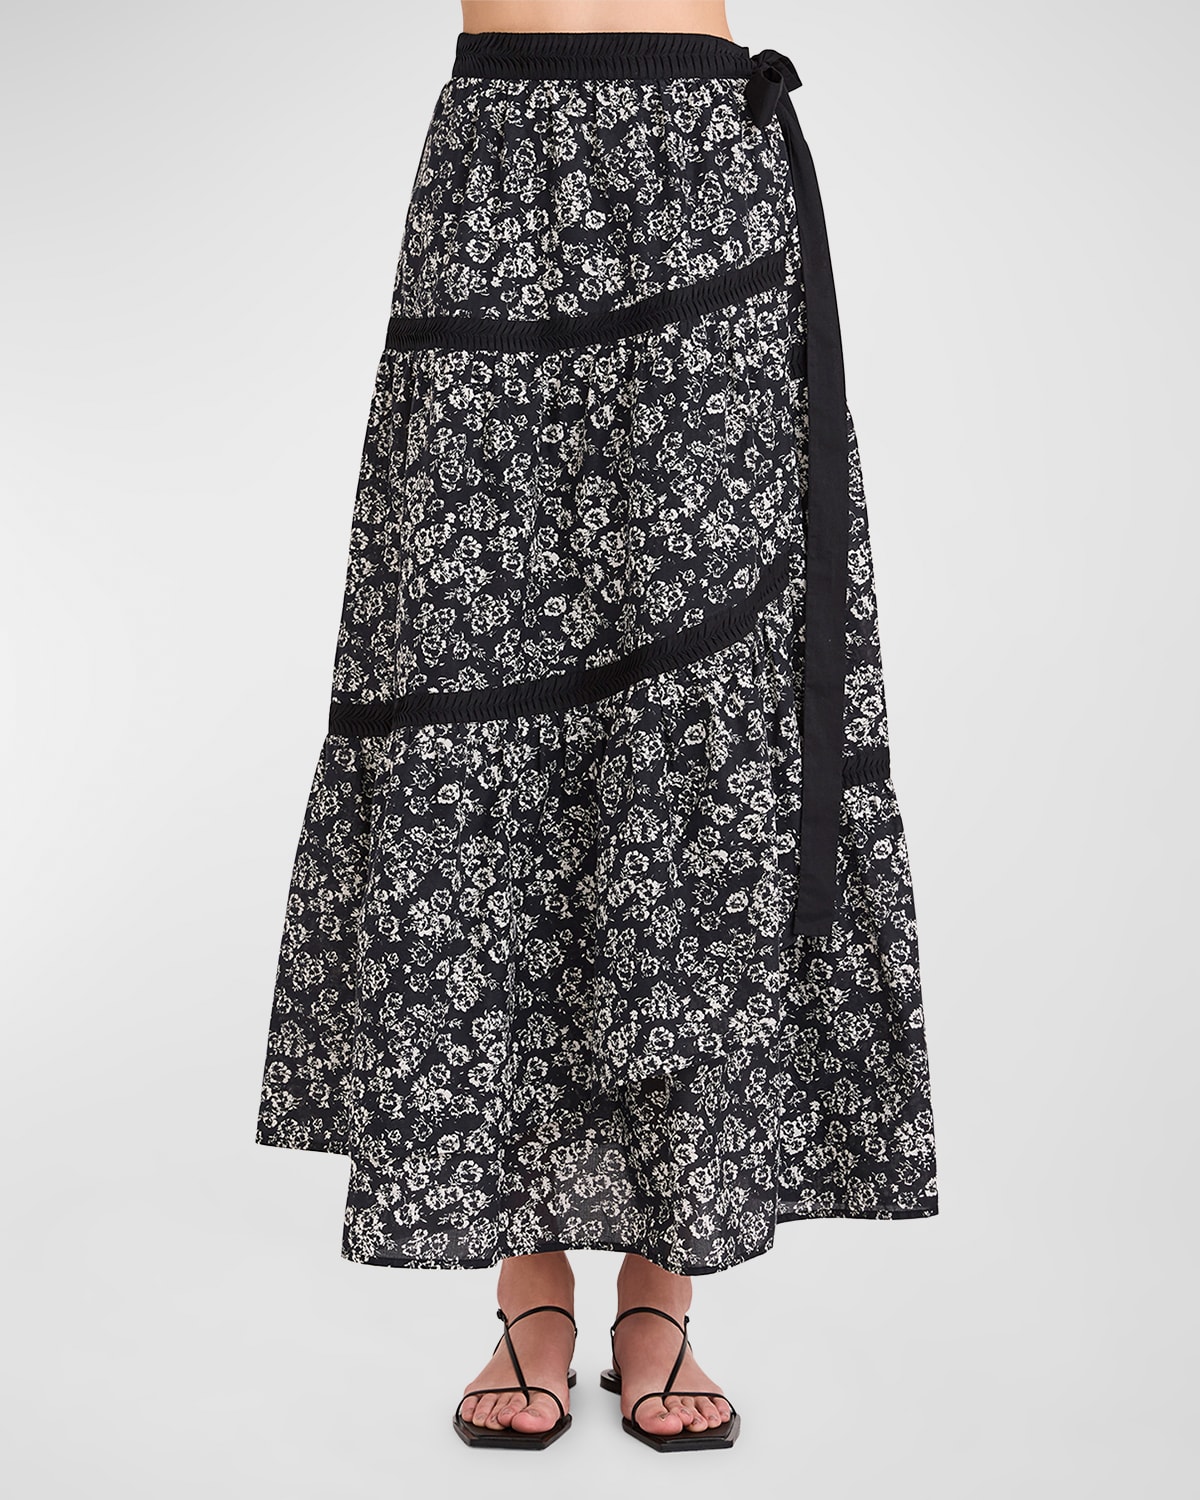 Merlette Prins Skirt In Black Stamped Floral Print